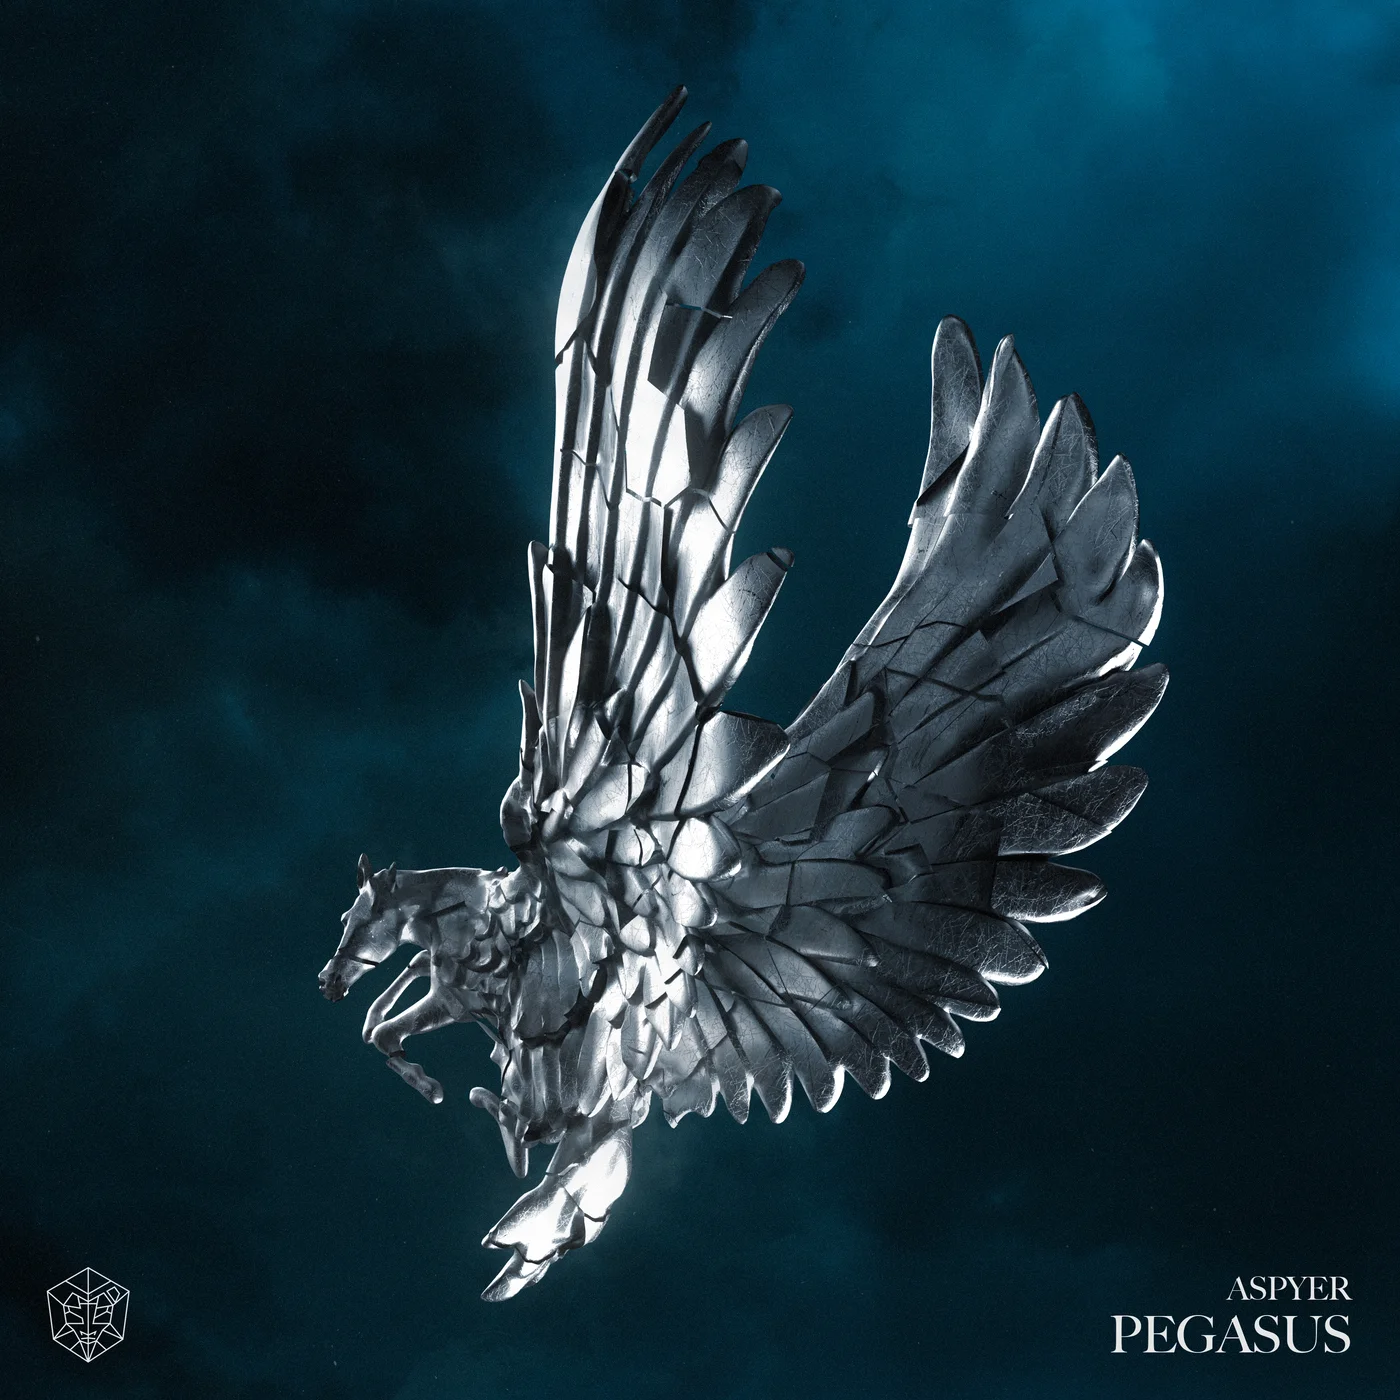 Aspyer Pegasus cover artwork